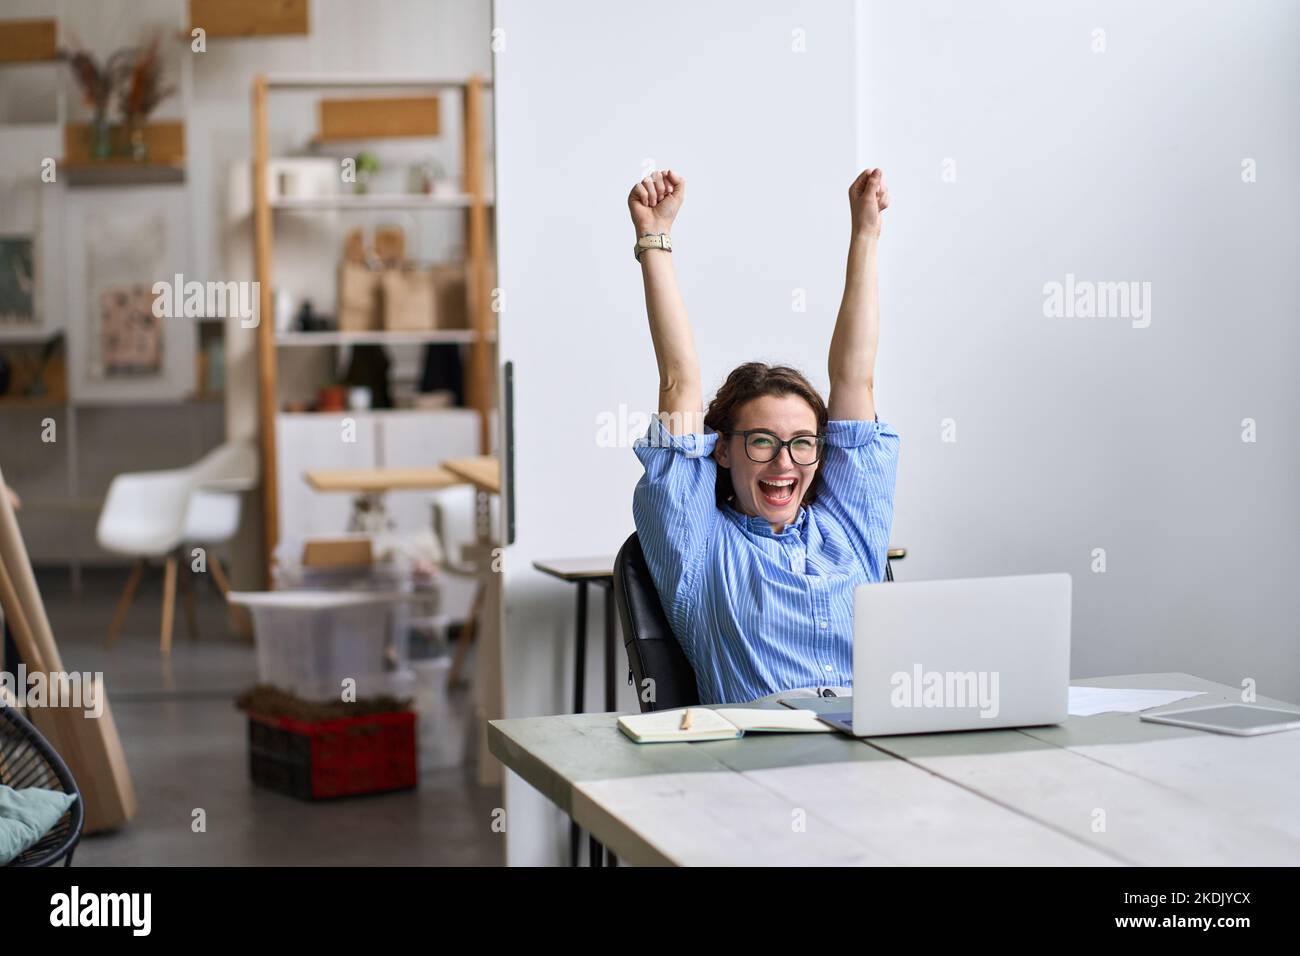 Une jeune femme heureuse et enthousiaste, étudiante ou employée utilisant un ordinateur portable pour célébrer son succès. Banque D'Images